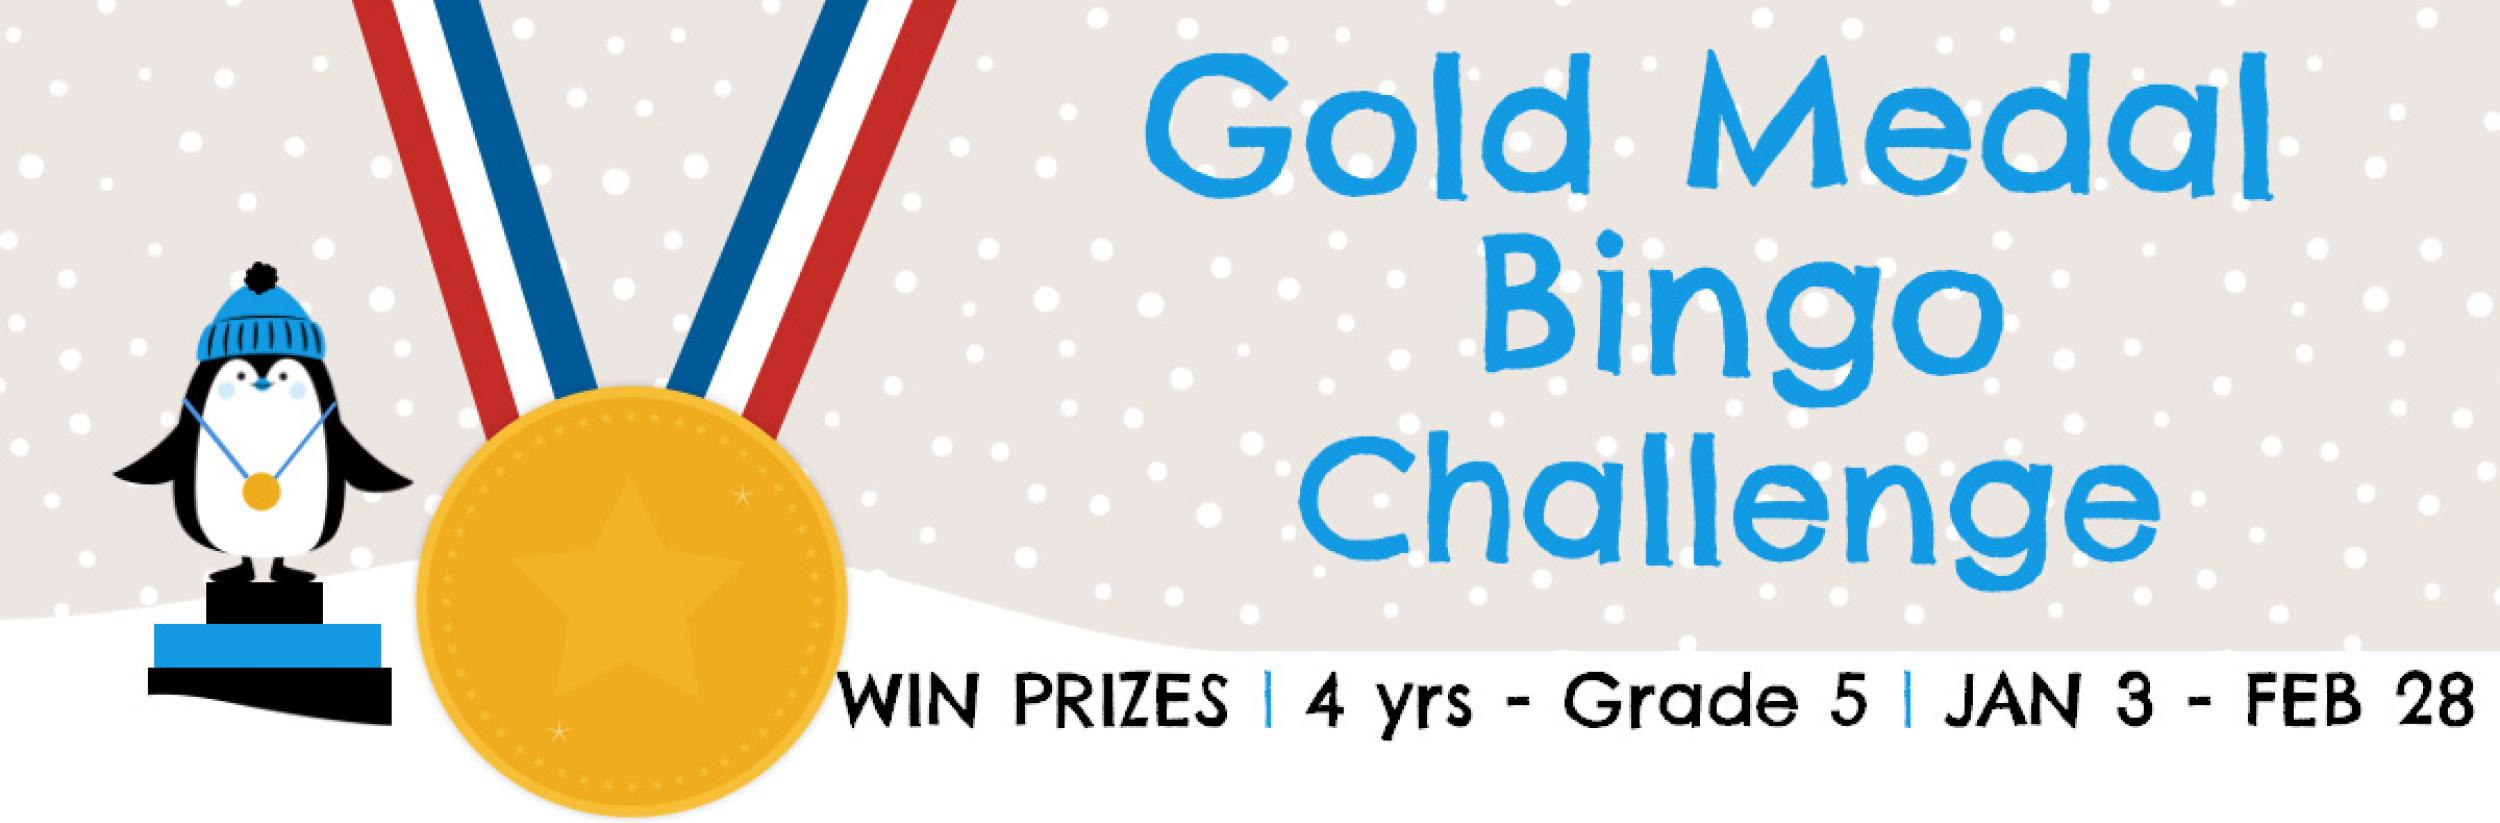 Image for "Gold Medal Bingo Challenge 2022"